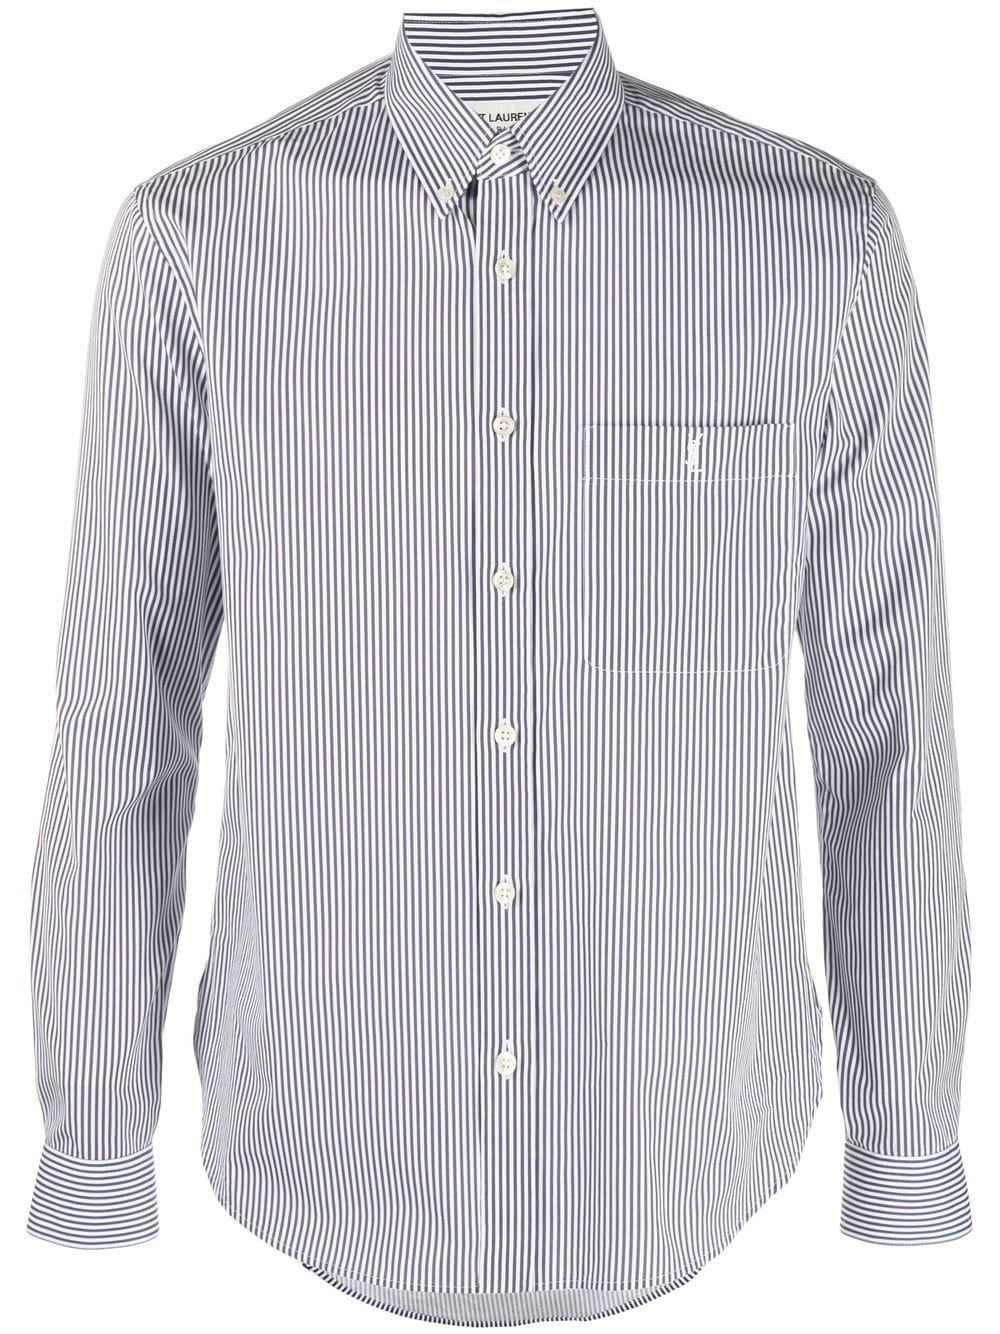 SAINT LAURENT Classic Striped Cotton Shirt for Men - FW23